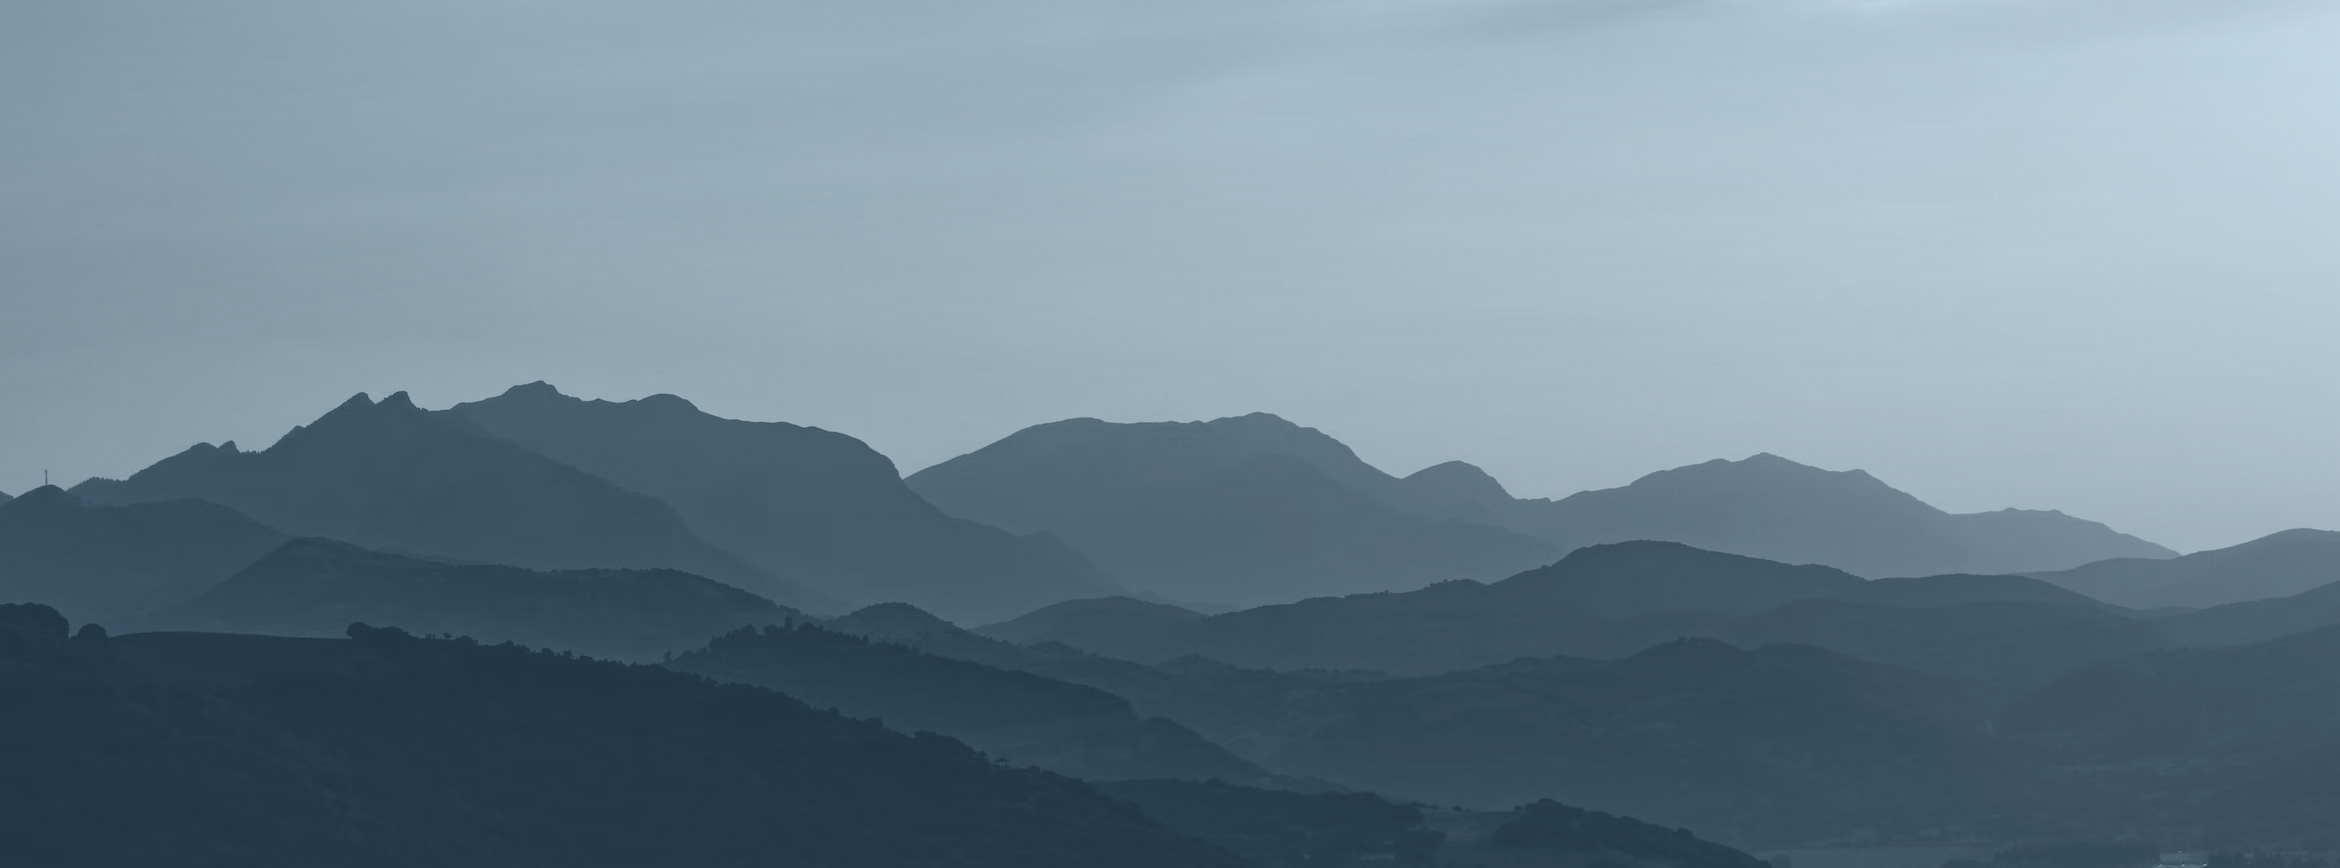 Appalachian Mountain Silhouette